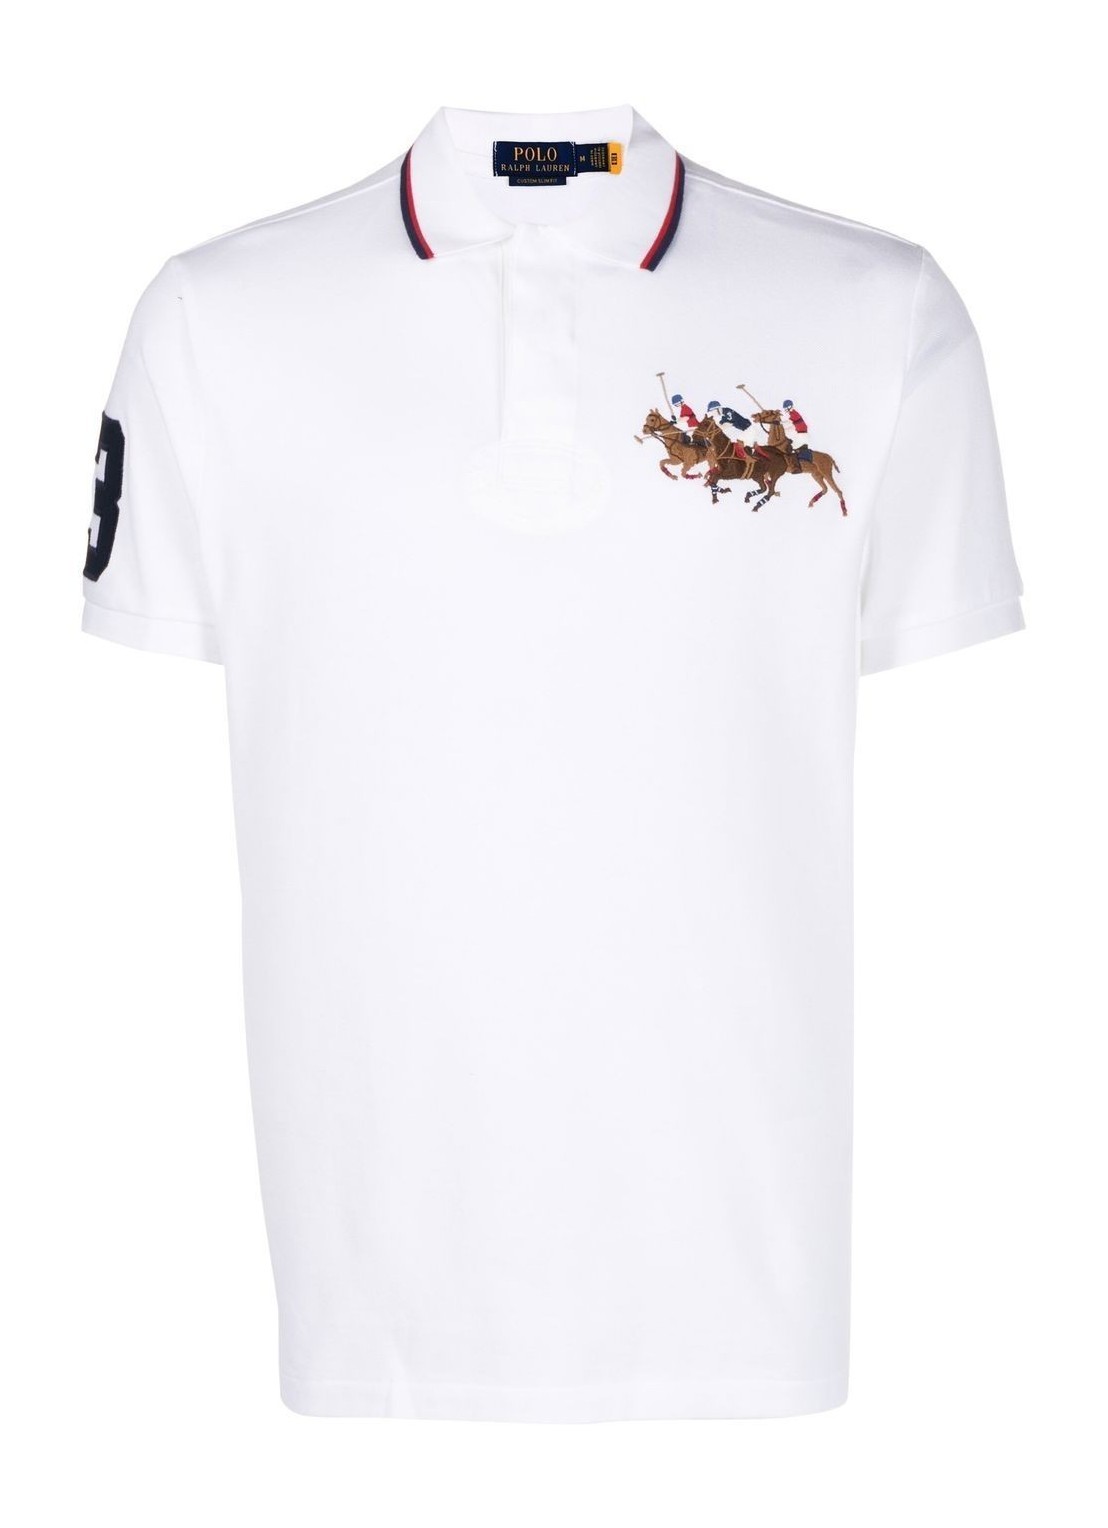 Polo polo ralph lauren polo man sskccmslm11-short sleeve-polo shirt 710900614001 white talla blanco
